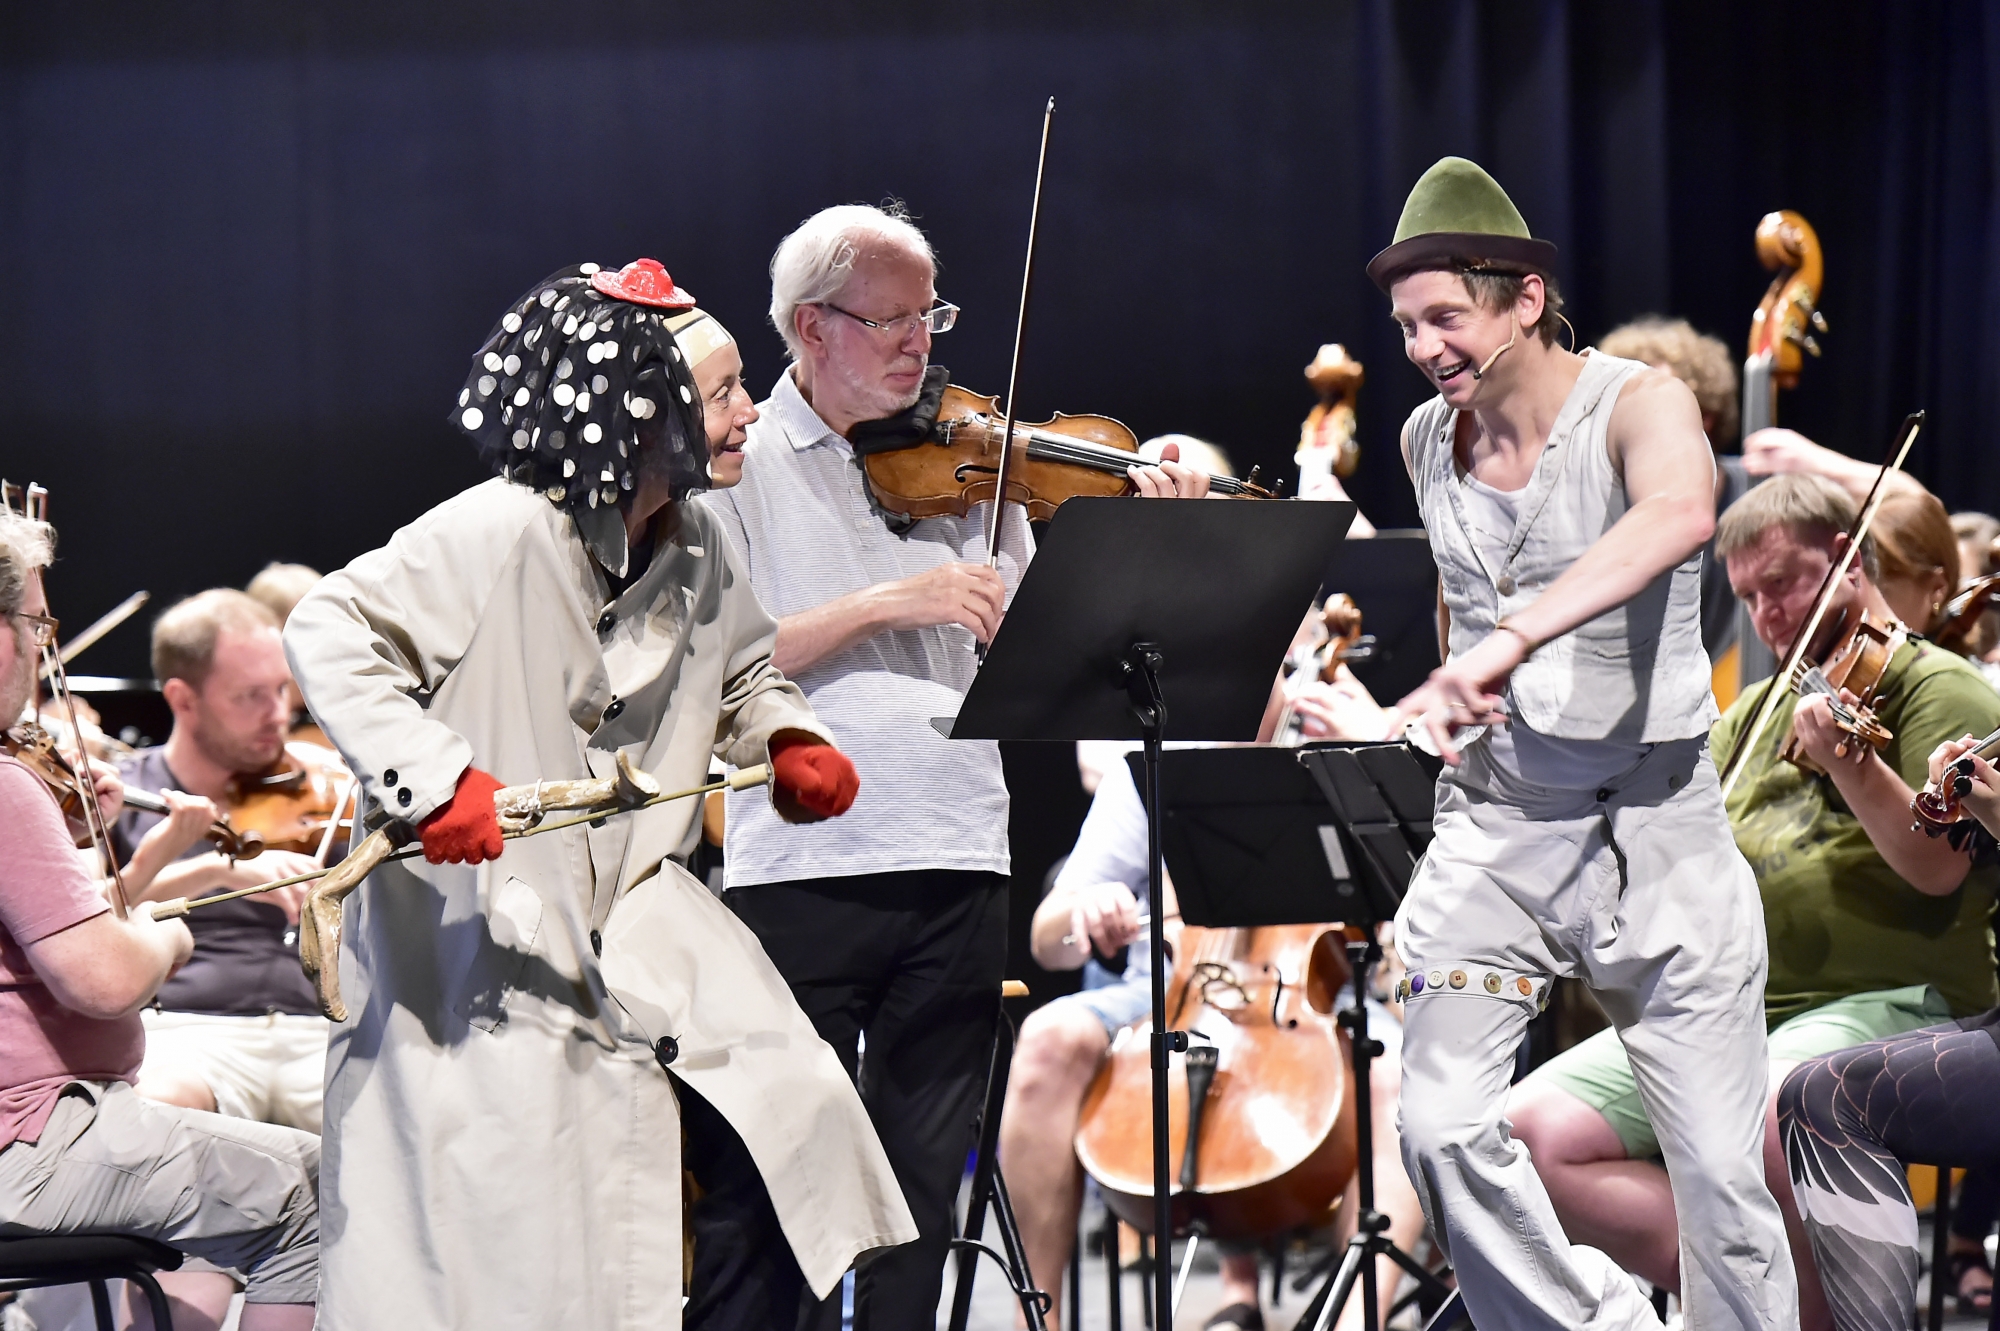 Lors de la répétition, Gidon Kremer entouré des clowns Catherine Germain et Julien Cottereau et accompagné par son ensemble, Kremerata Baltica.